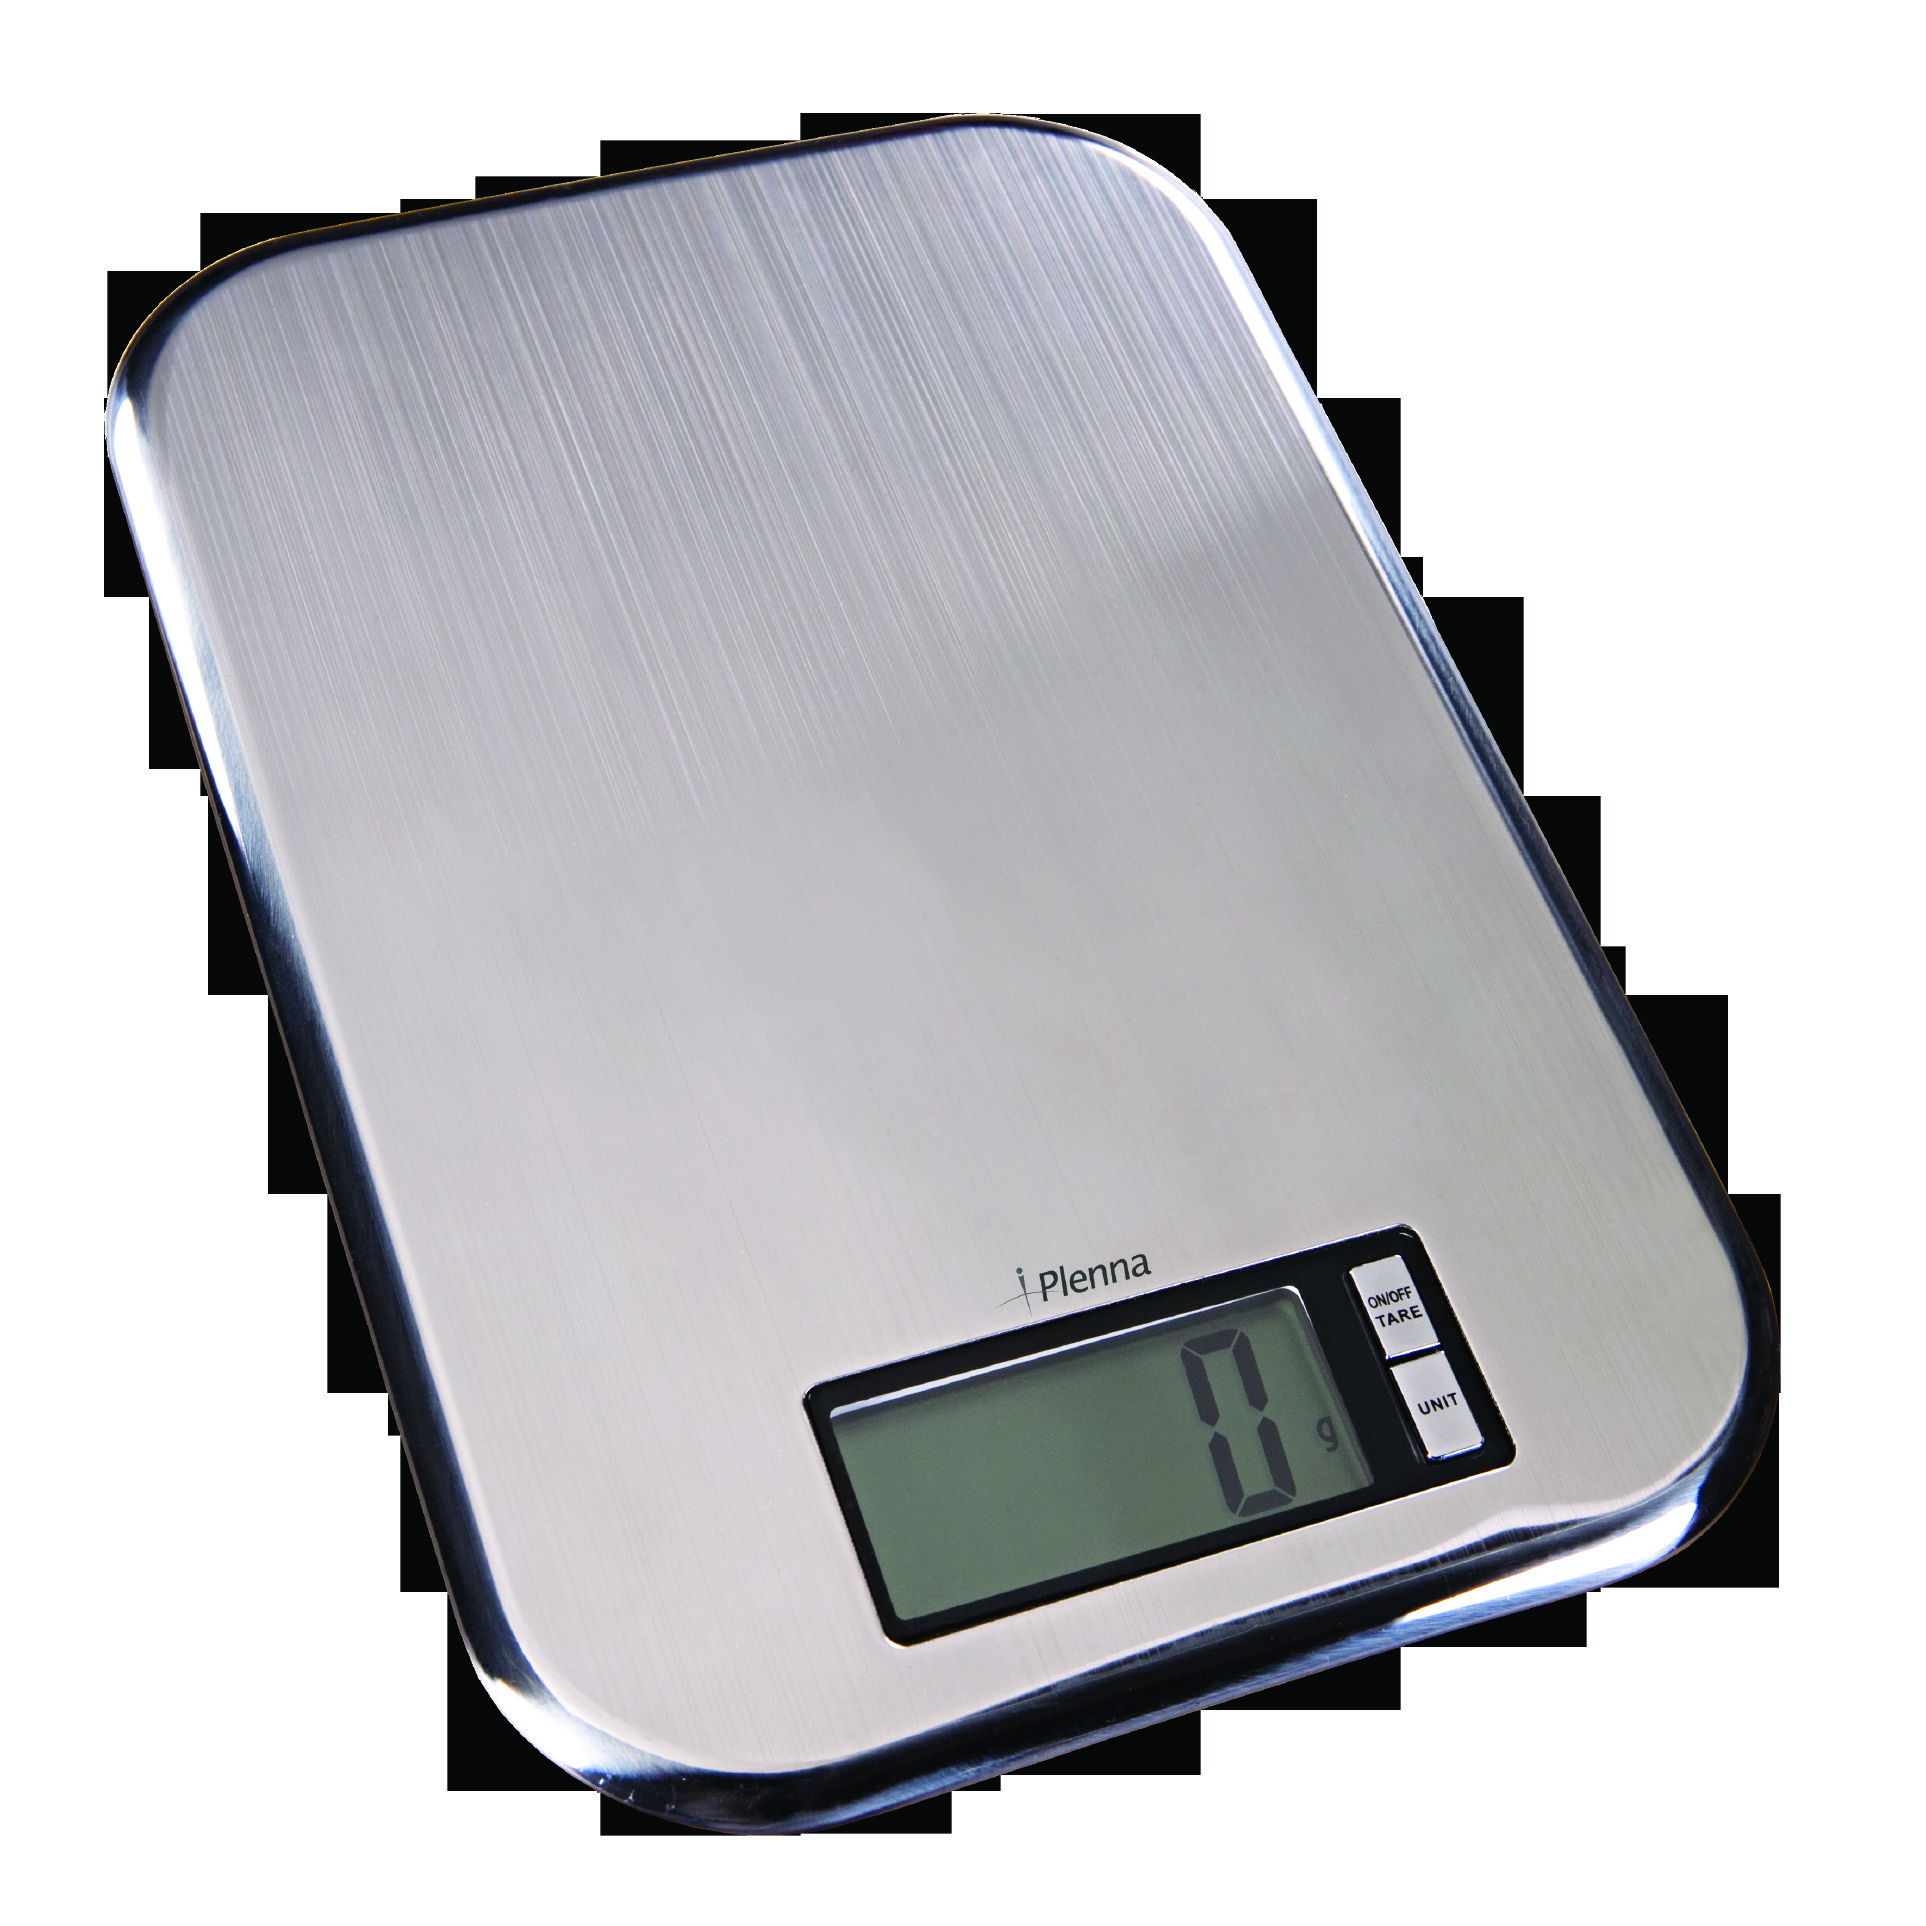 Thinox Digital de precisão BEL-00032 Unidade de Medida: kg/lb/st; Capacidade: 5000 g; Visor: Cristal